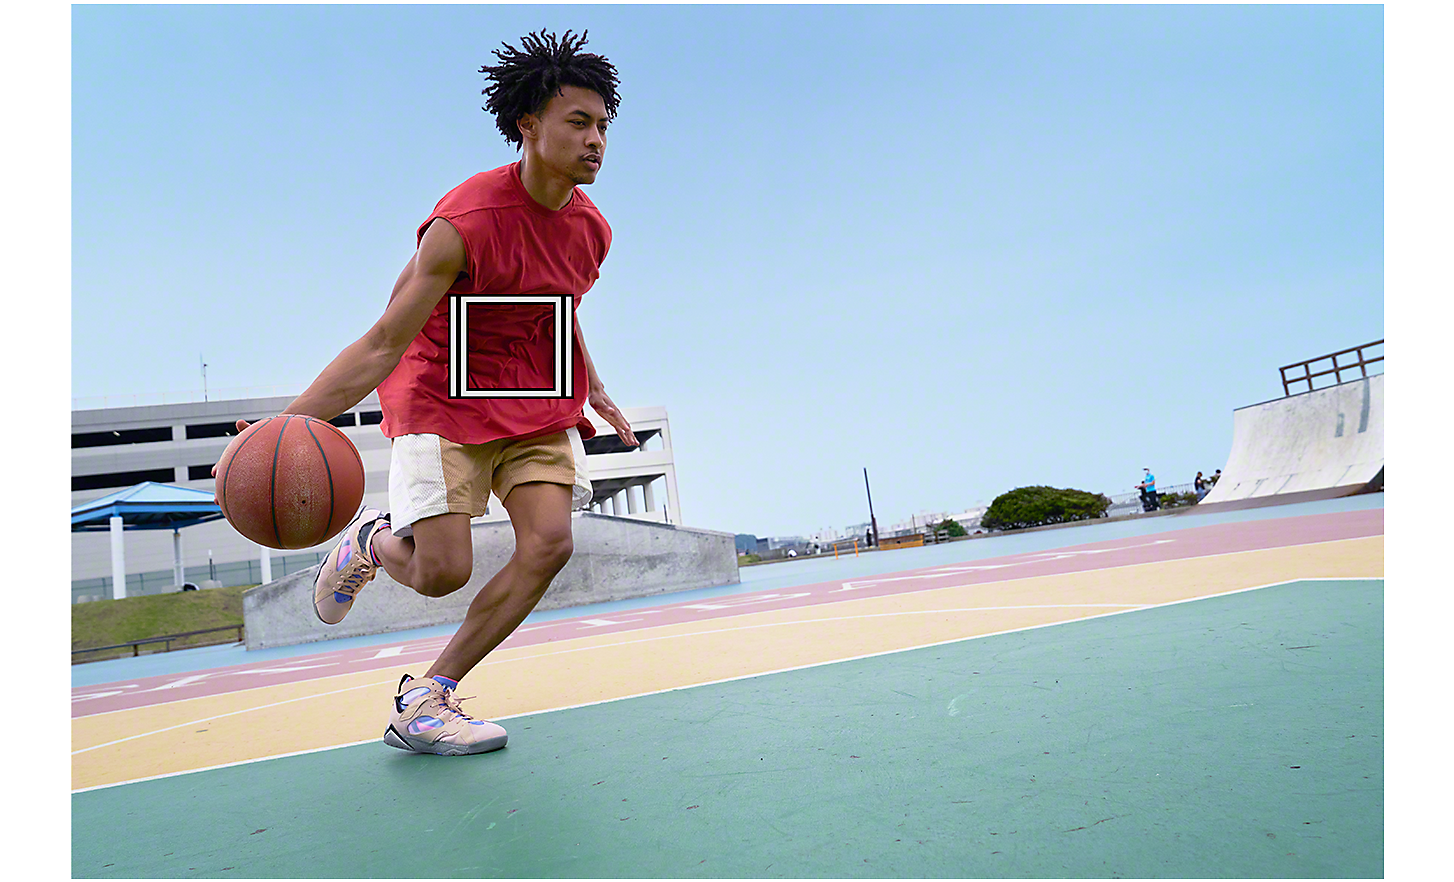 Moški vodi košarkaško žogo, bel kvadratek označuje sledenje predmetom